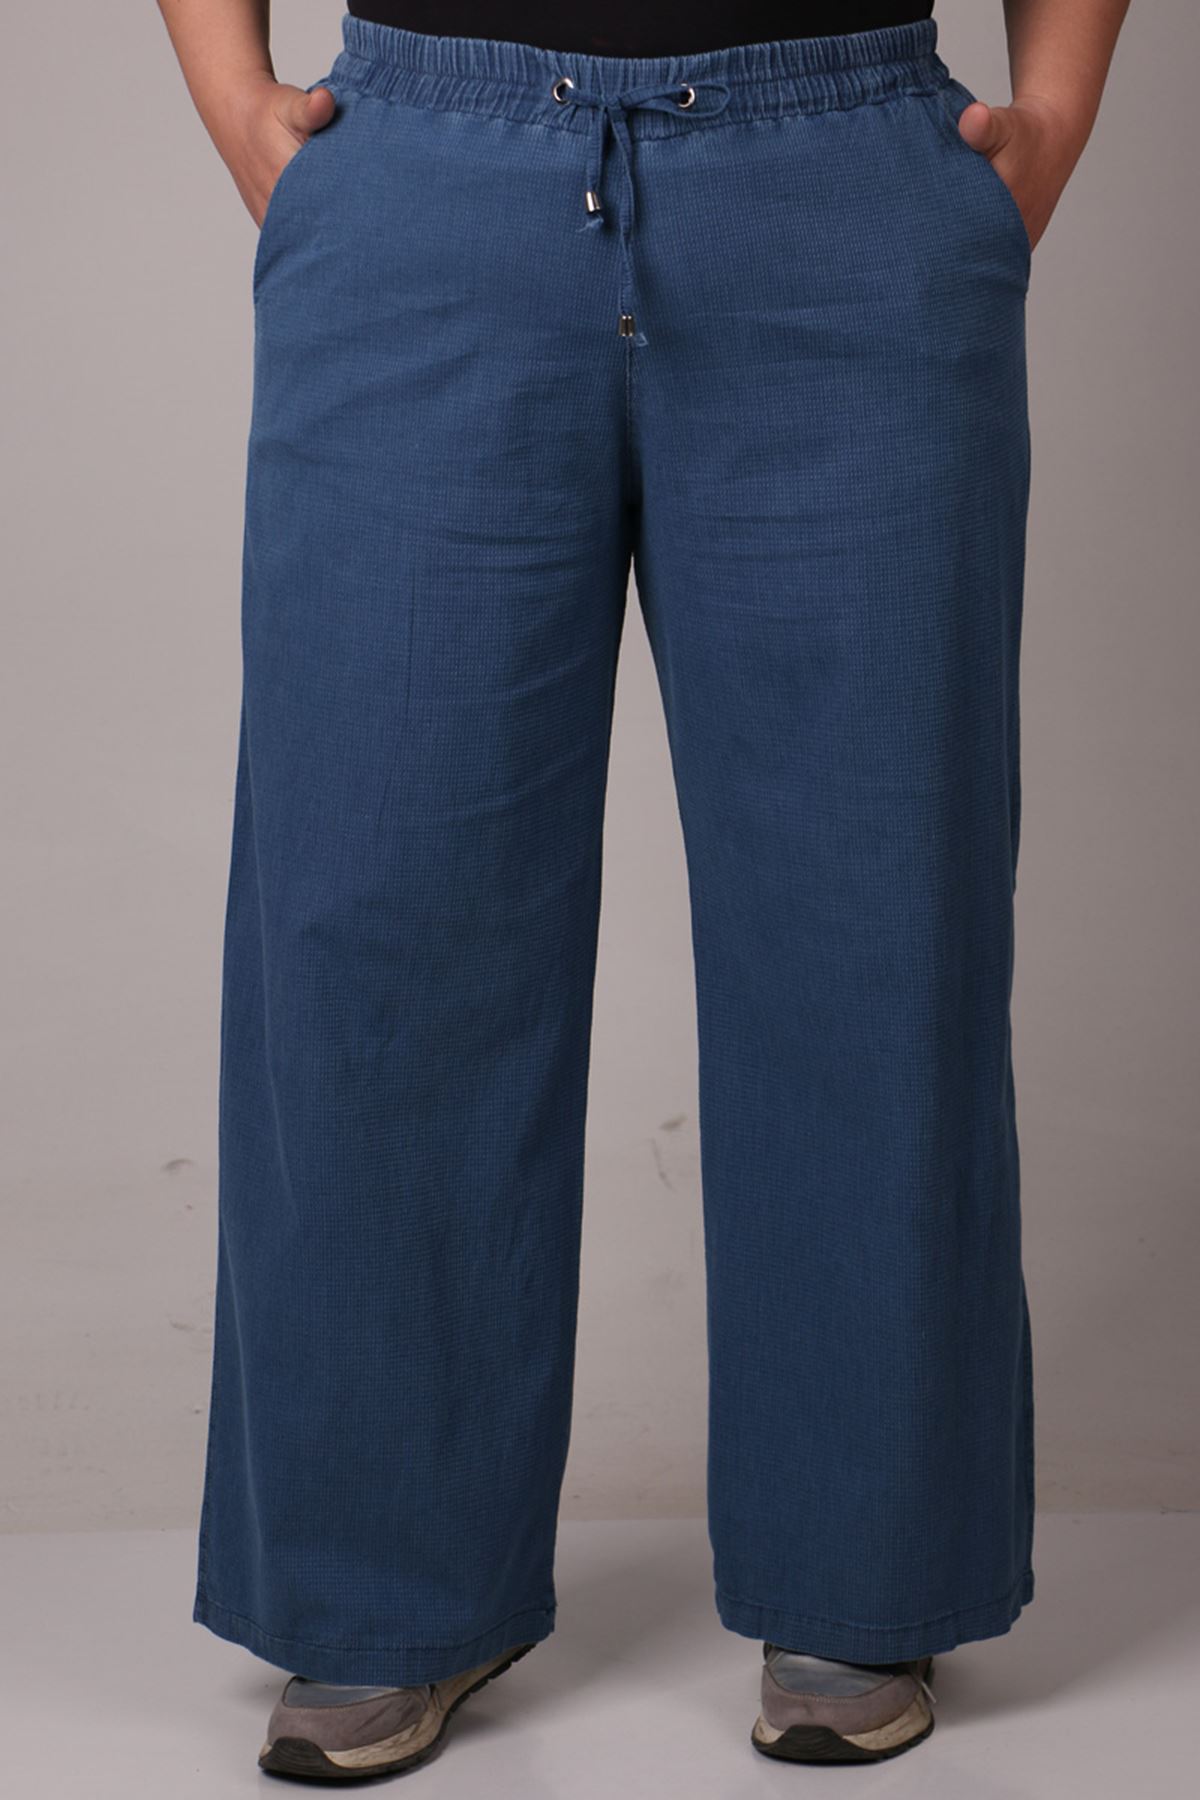 29000-1 Plus Size Piti Kareli Plentiful Trotter Jeans Pants - Blue